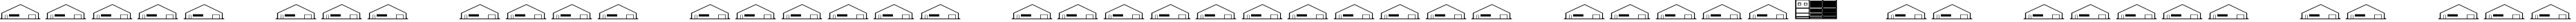 Пример написания шрифтом Buildings текста на русском